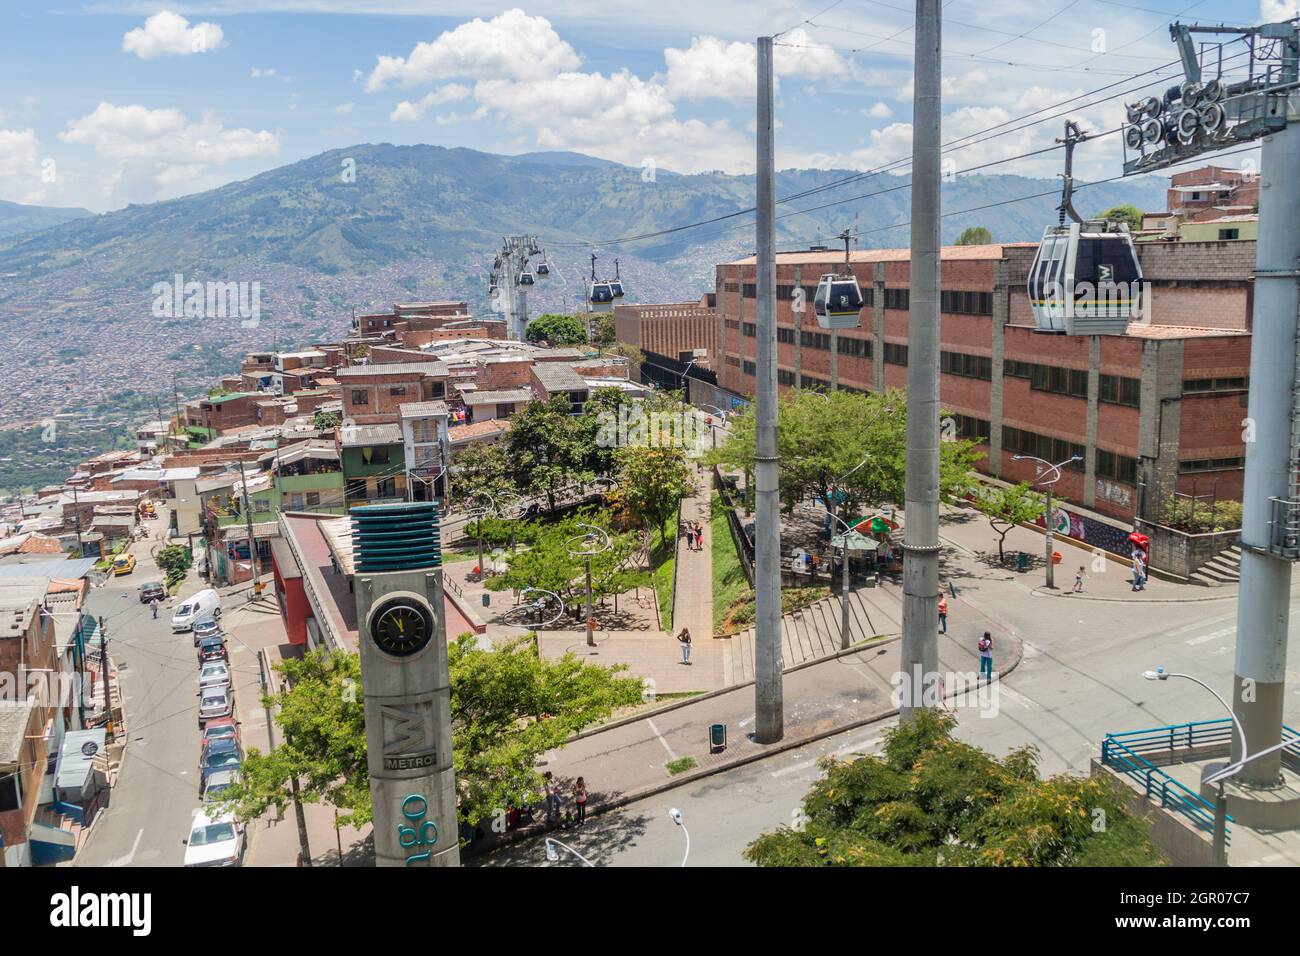 MEDELLIN, KOLUMBIEN - 4. SEPTEMBER: Das Seilbahn-System von Medellin verbindet arme Viertel in den Hügeln rund um die Stadt. Stockfoto